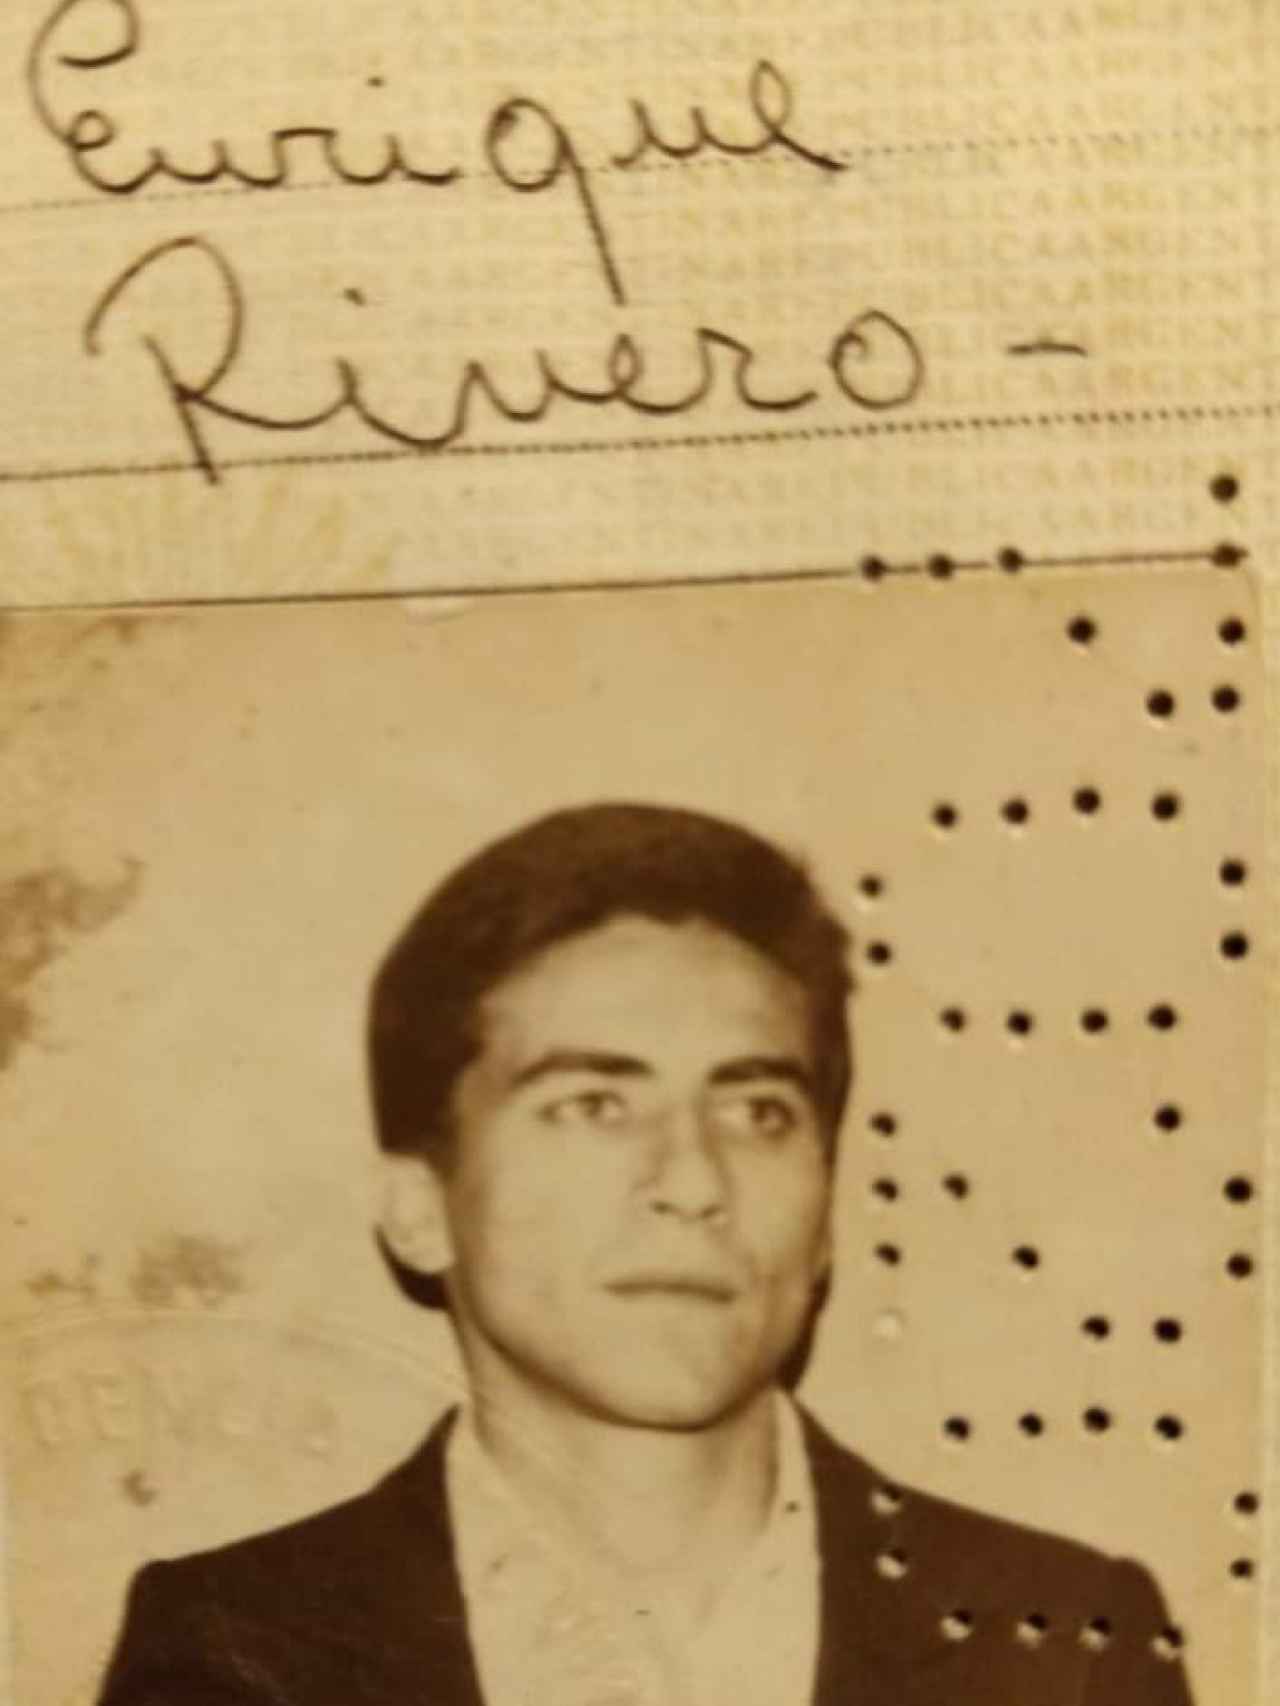 Fotografía de un joven Quique Rivero que después aparecería en su pasaporte